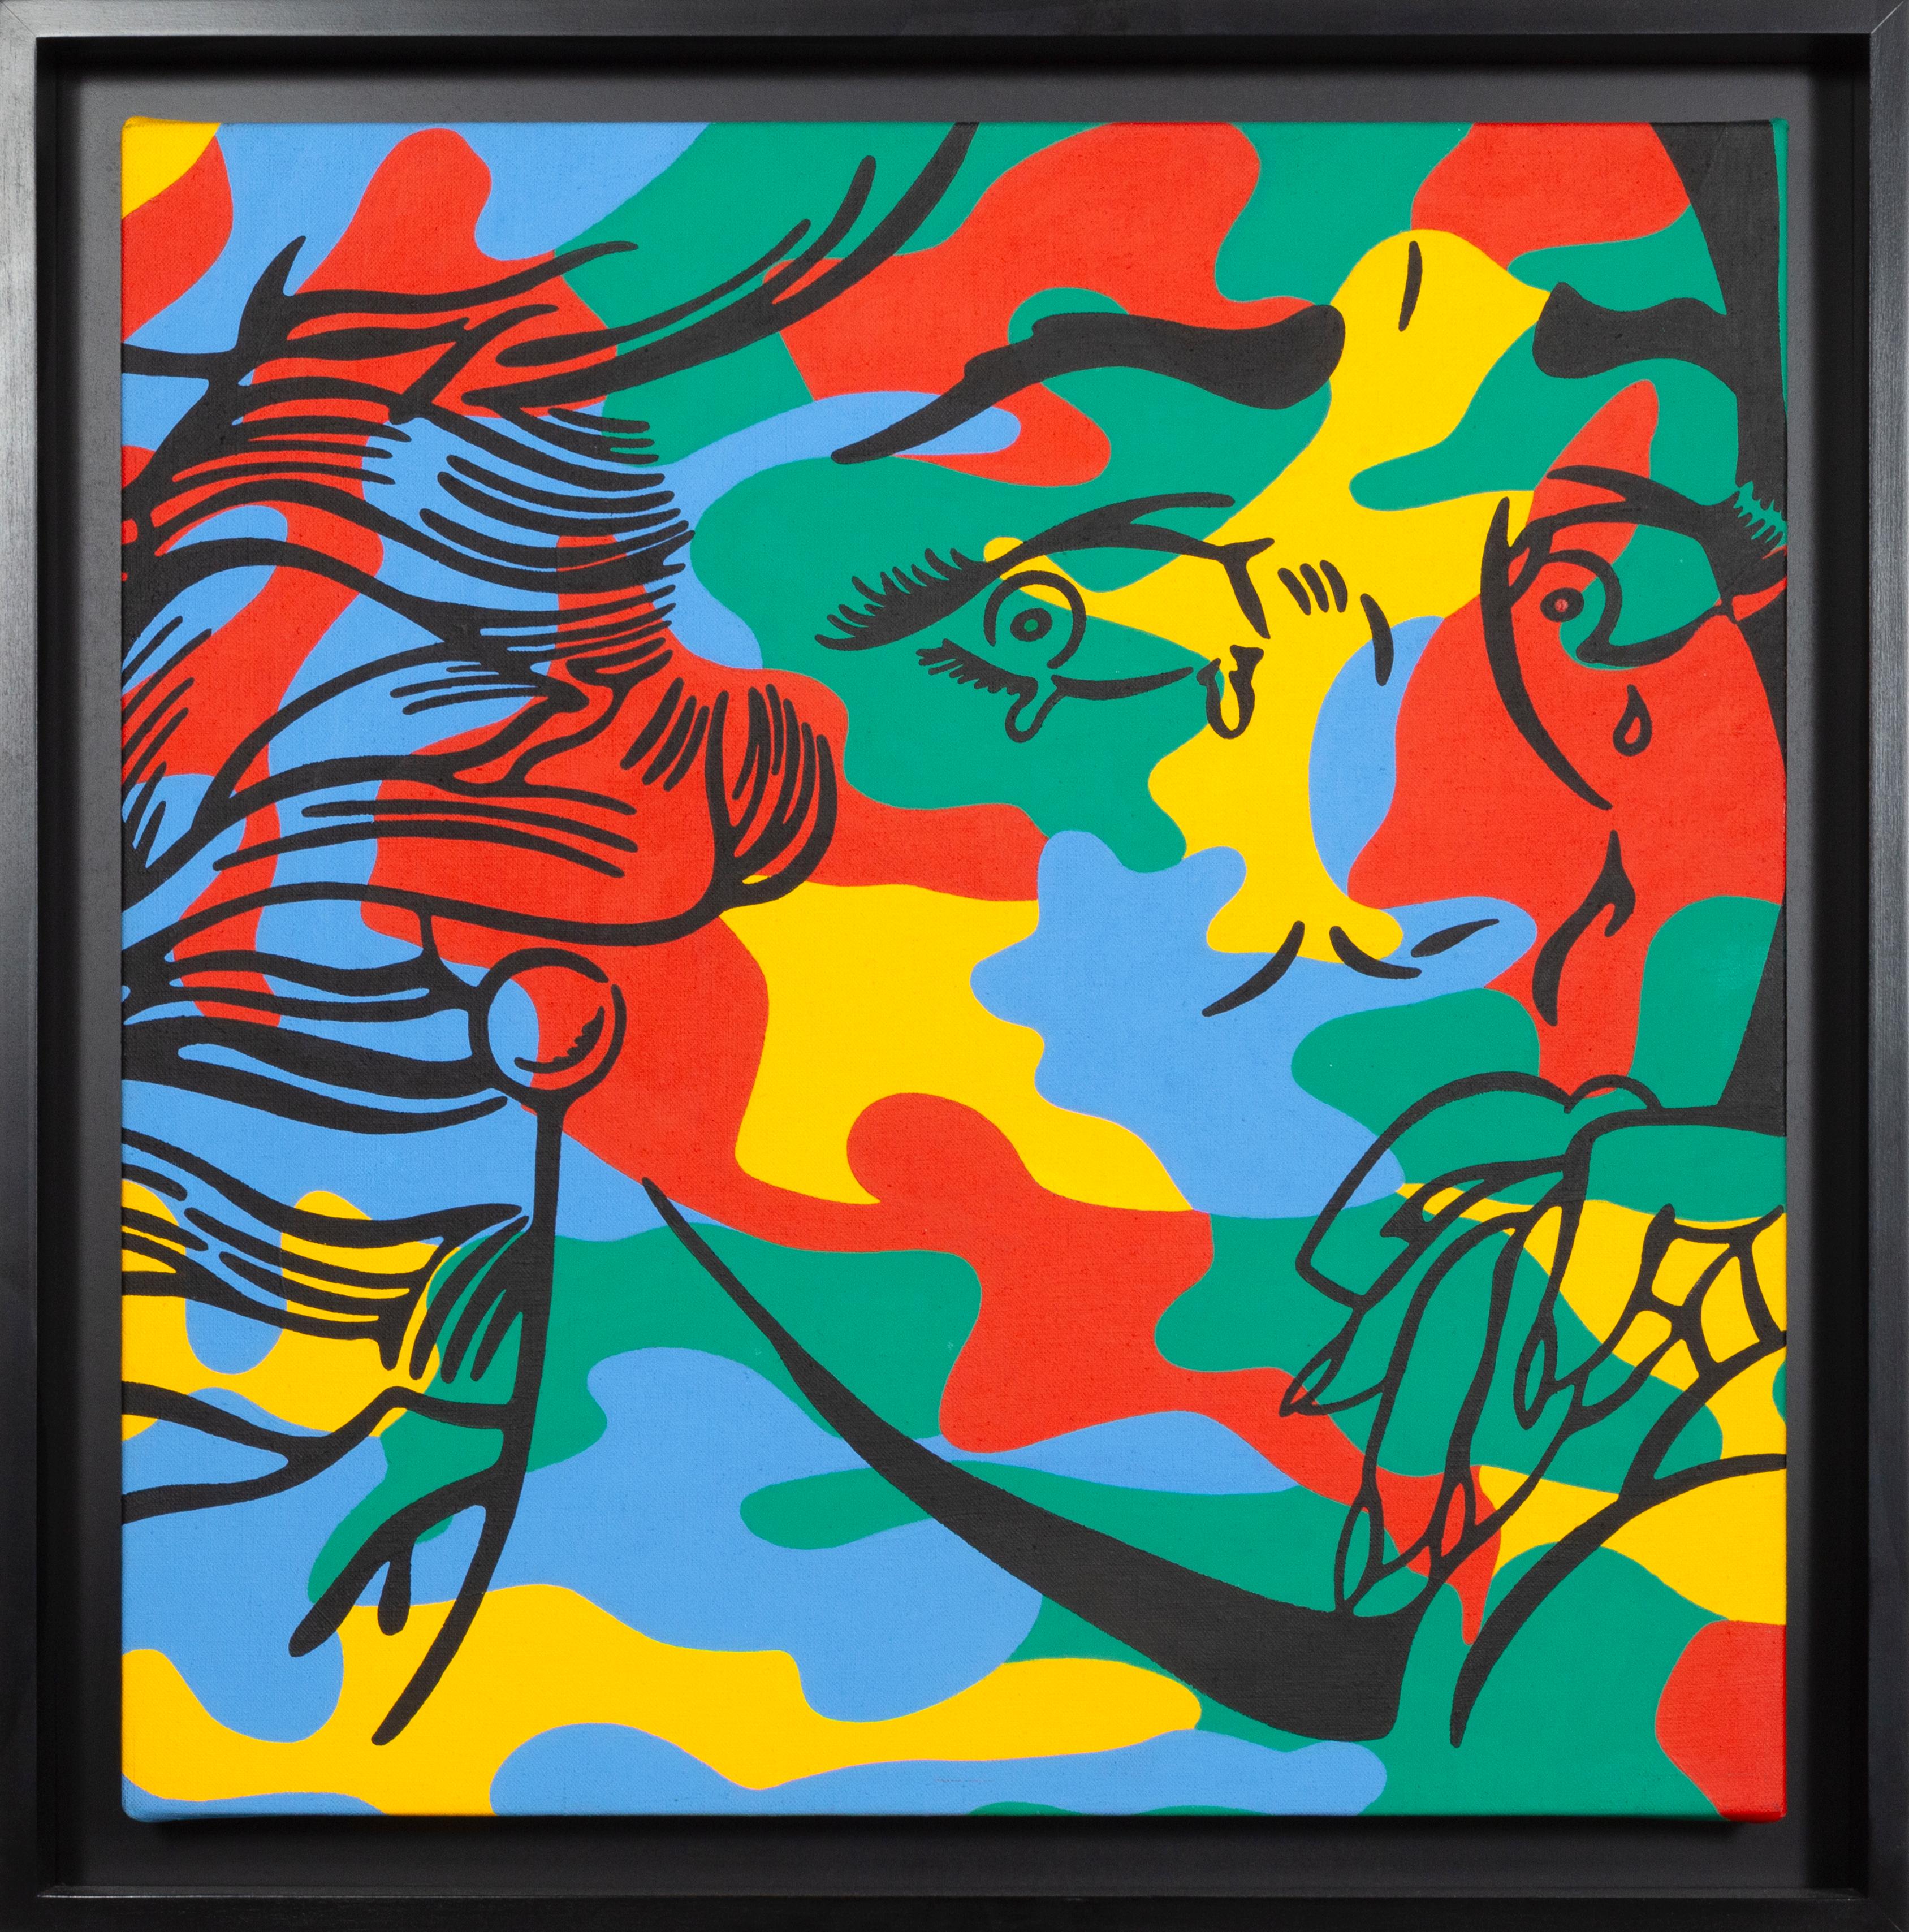 Künstlerin: Corinna Heumann, Deutsche (1962 -  )
Titel: Lichtenstein trifft Warhol (Weinendes Camouflage-Mädchen)
Jahr: 2002
Medium: Öl auf Leinwand, verso signiert, betitelt und datiert
Größe: 24 x 24 in. (60,96 x 60,96 cm)
Rahmengröße: 27,75 x